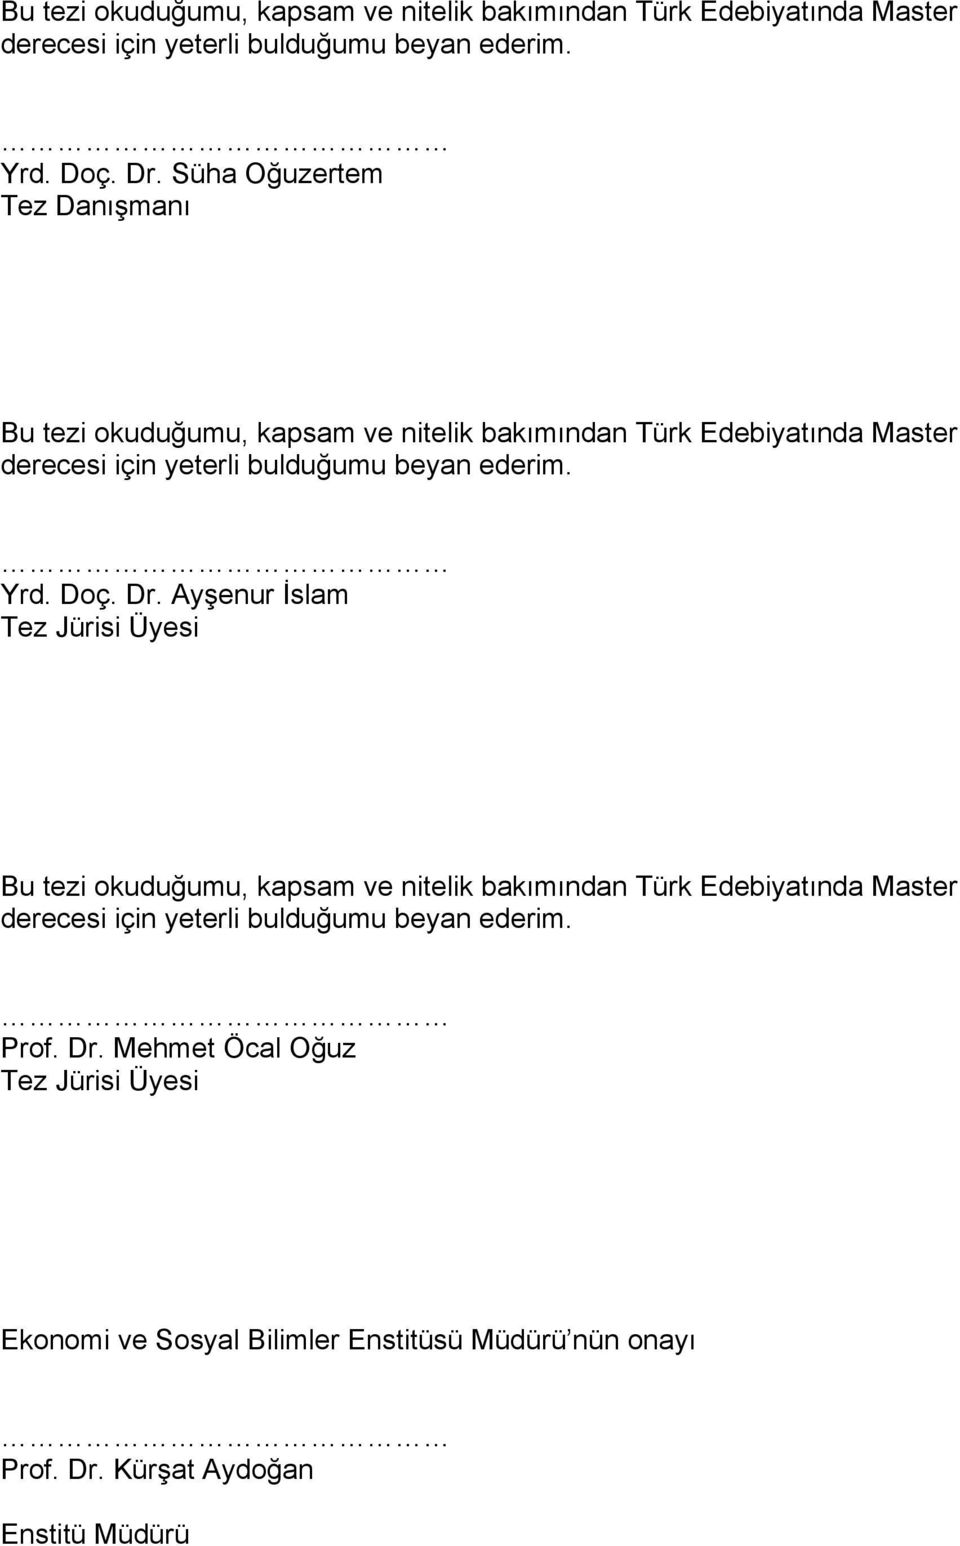 için yeterli bulduğumu beyan ederim. Prof. Dr. Mehmet Öcal Oğuz Tez Jürisi Üyesi Ekonomi ve Sosyal Bilimler Enstitüsü Müdürü nün onayı Prof. Dr. Kürşat Aydoğan Enstitü Müdürü